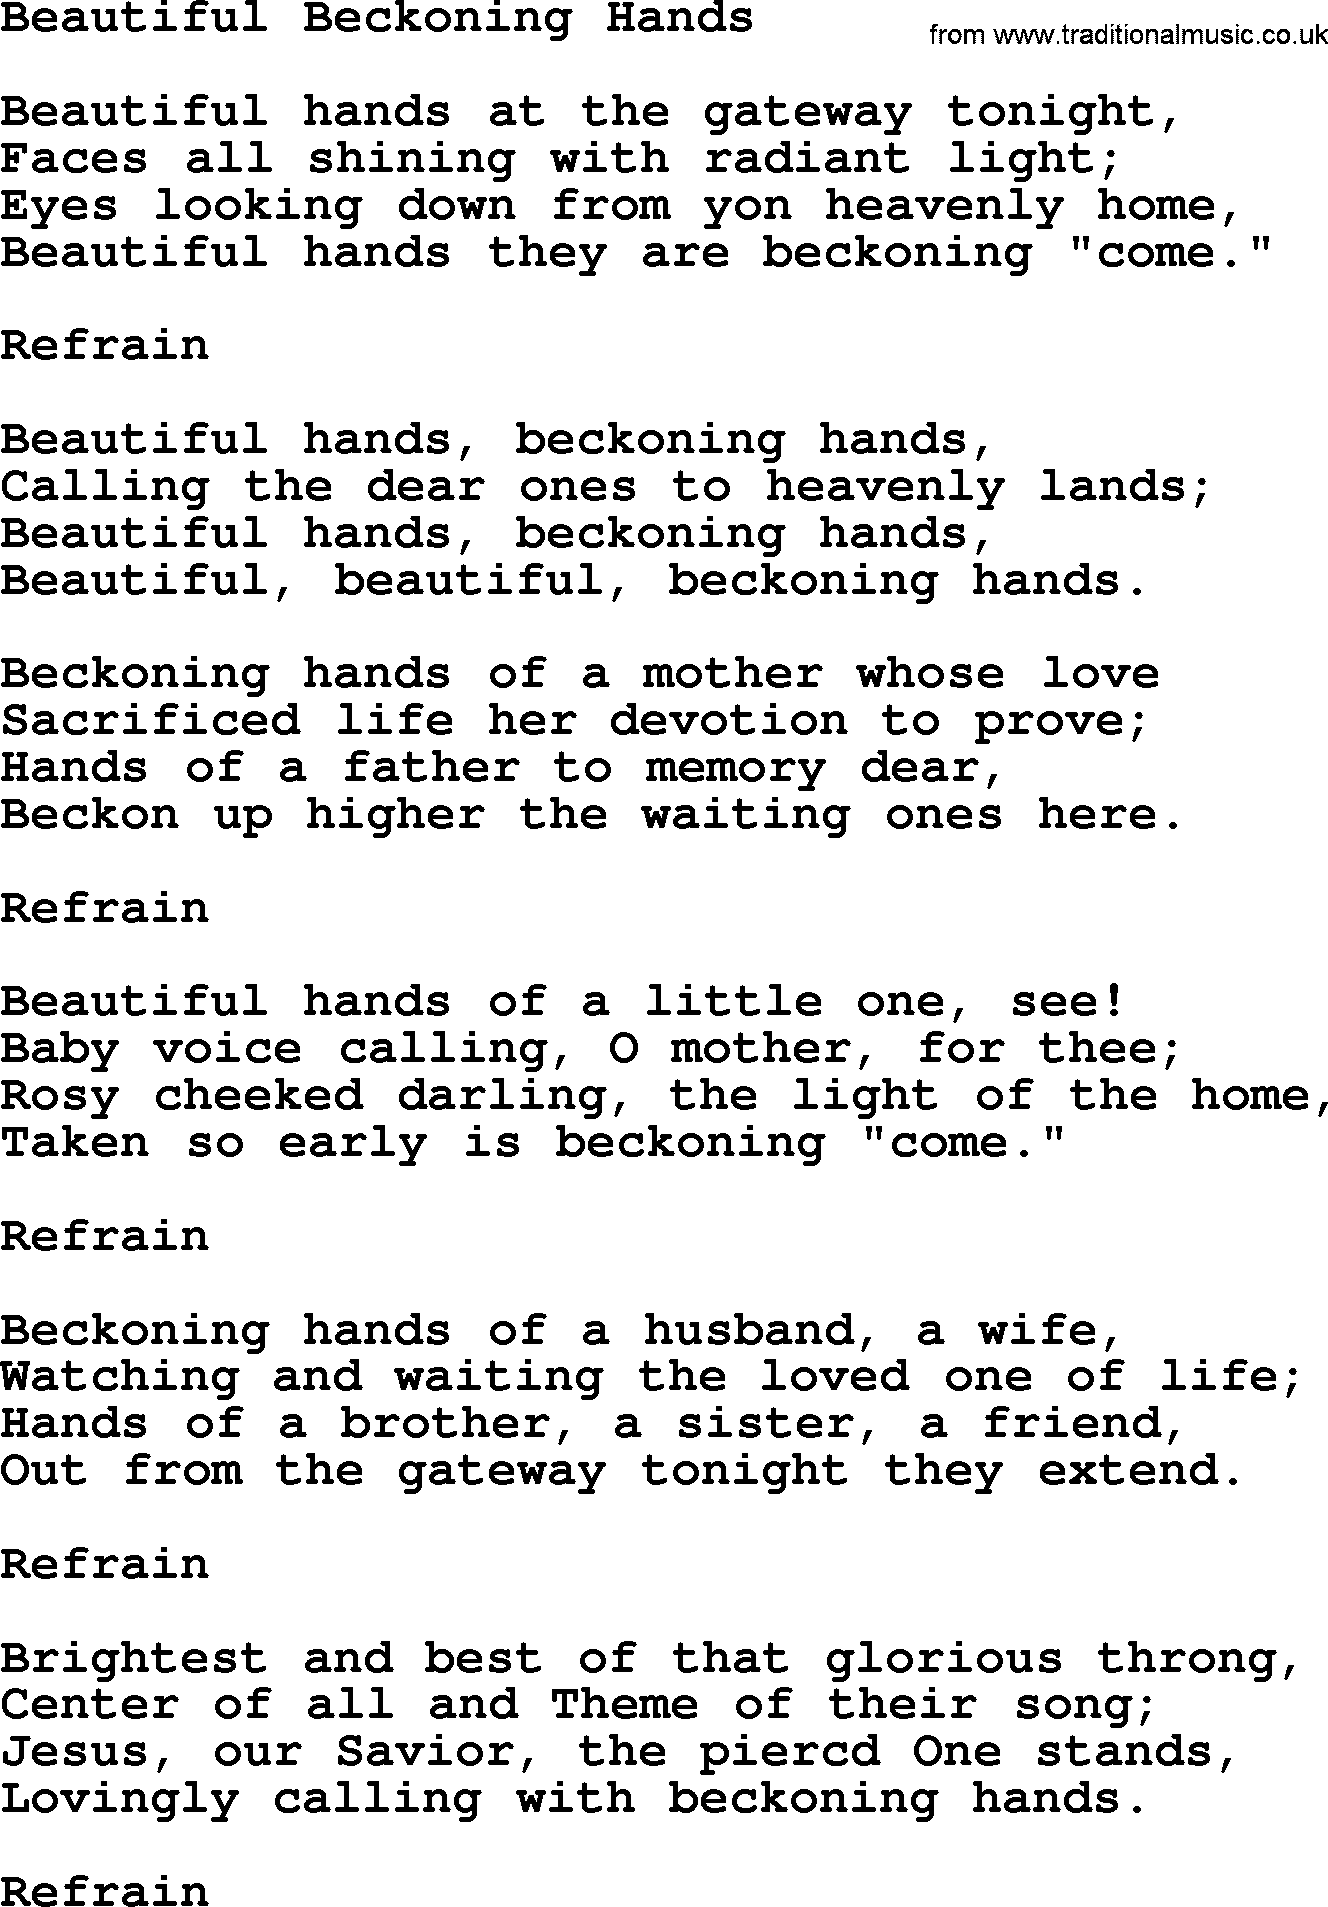 Catholic Hymn: Beautiful Beckoning Hands lyrics with PDF